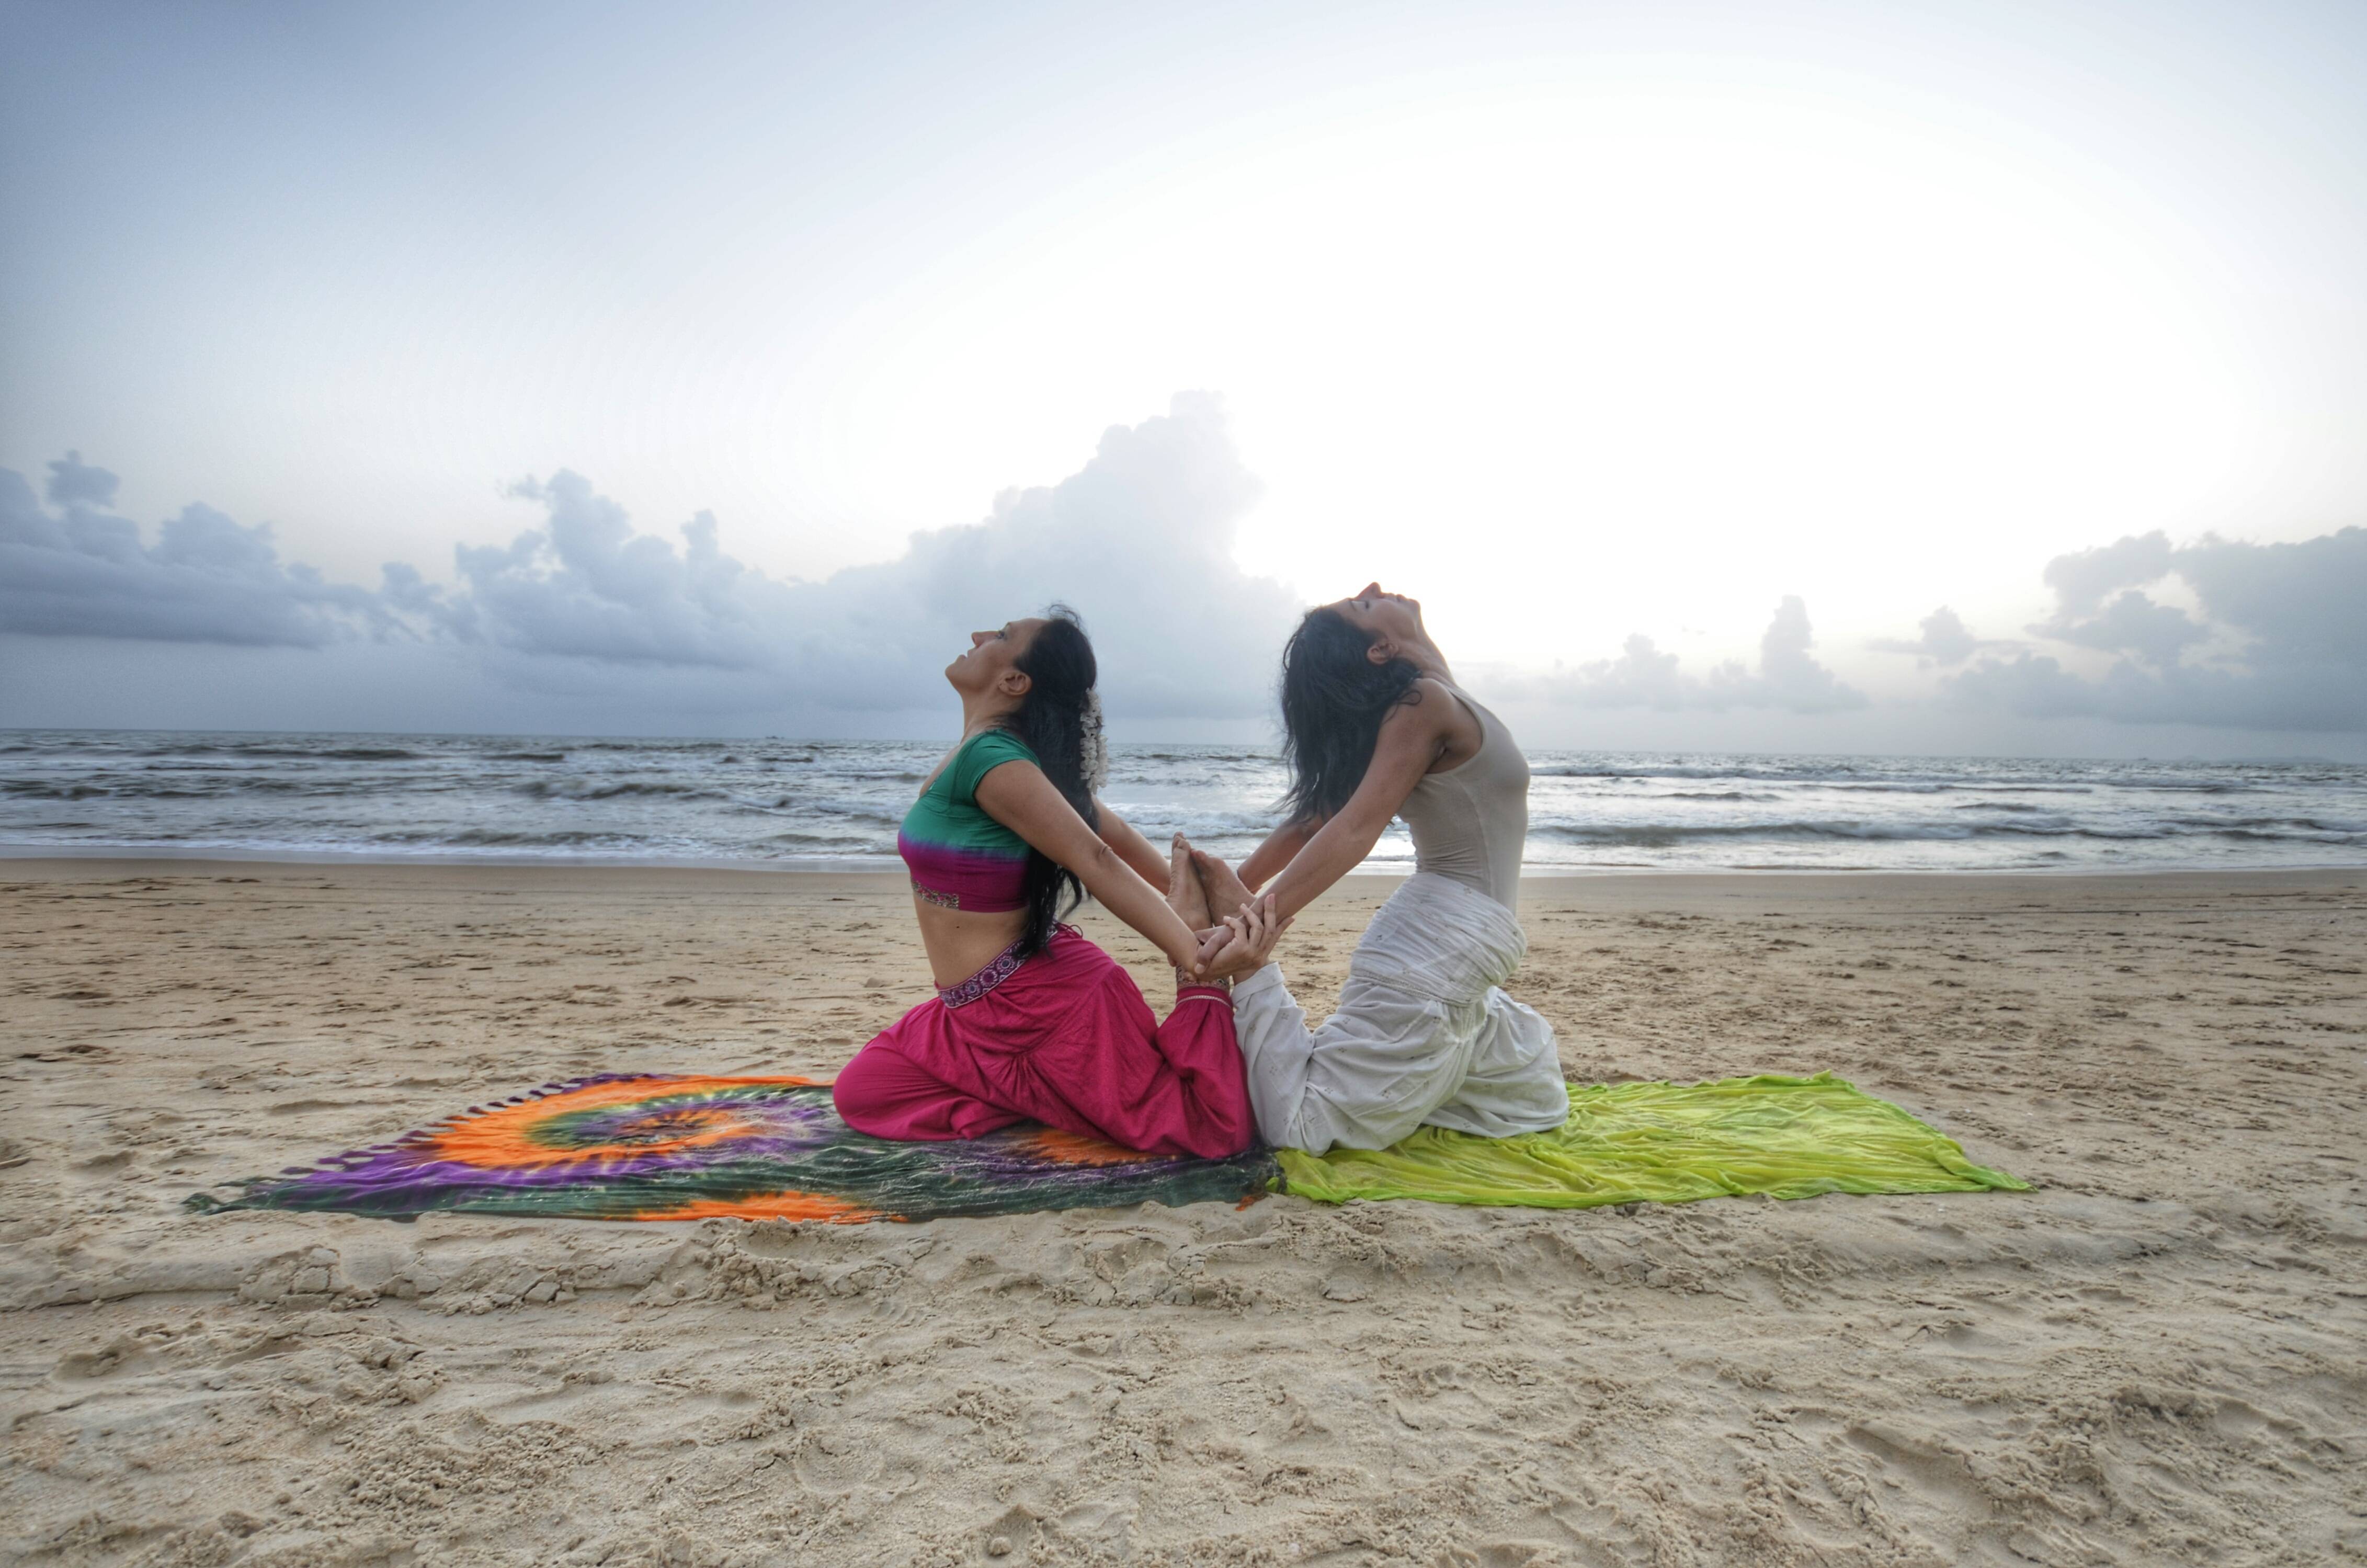 Царица среди всех йог раджа-йога: самое совершенное направление для духовного развития